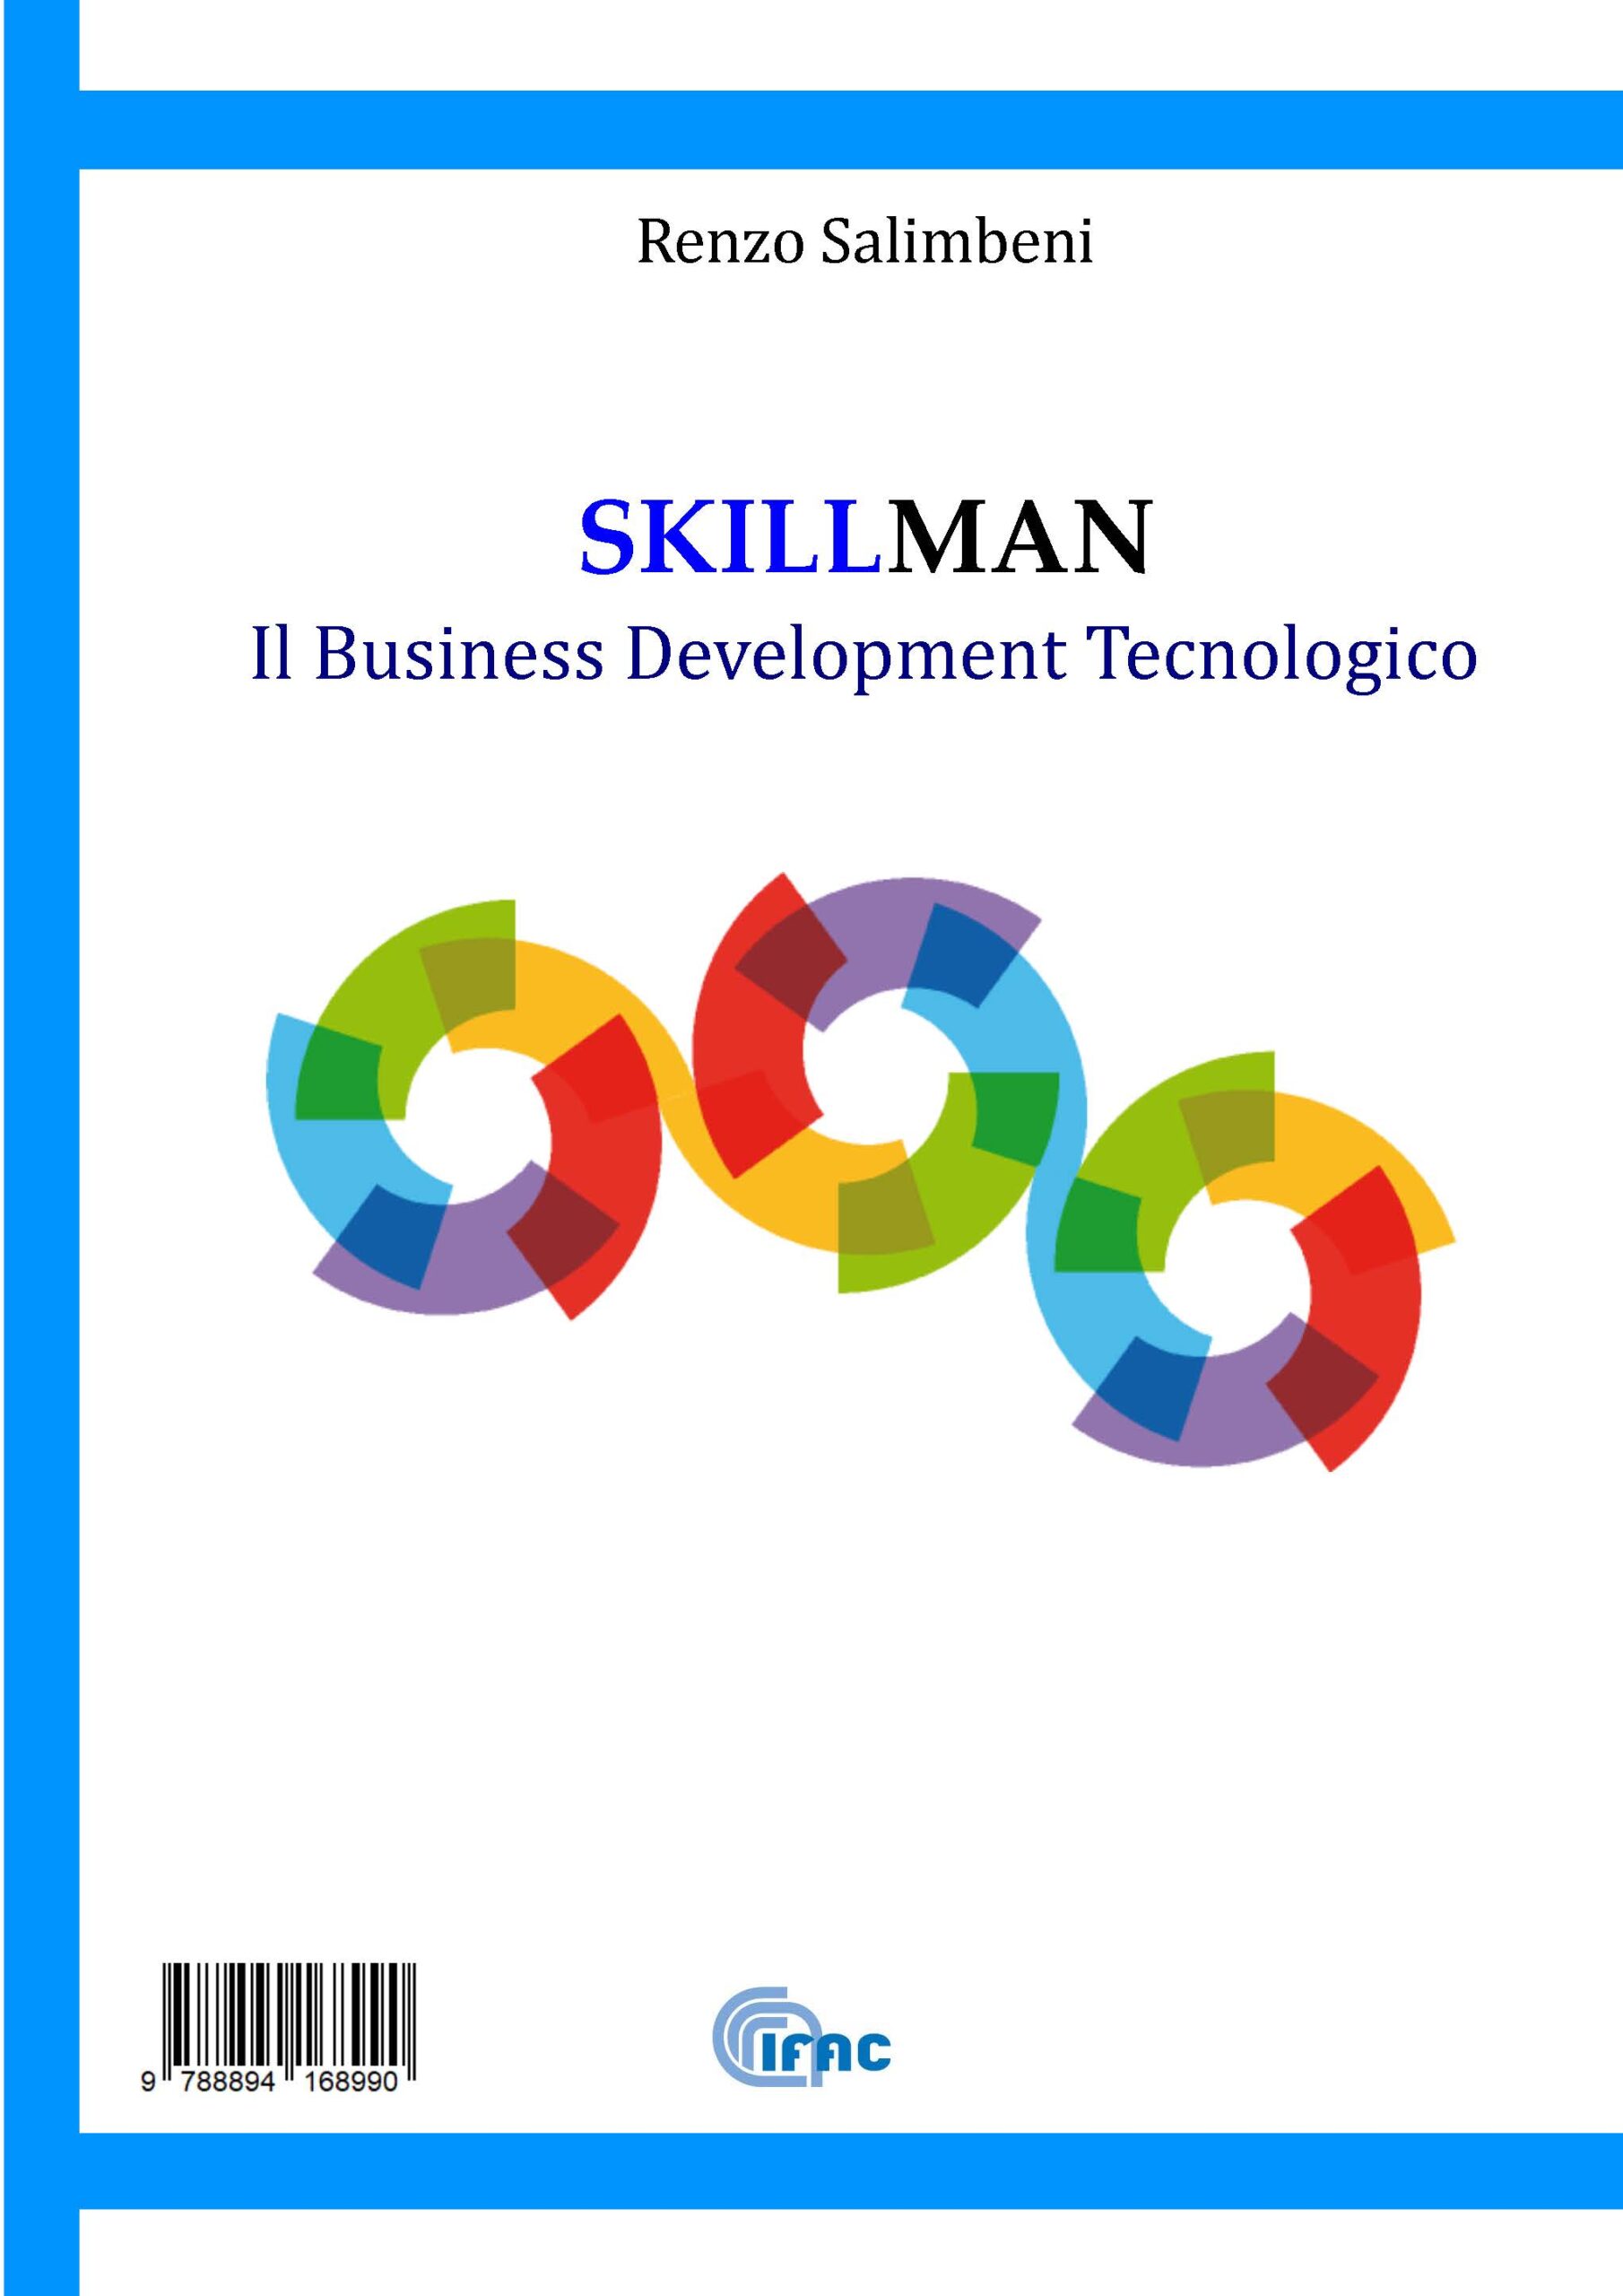 Skillman - ll Business Development Tecnologico